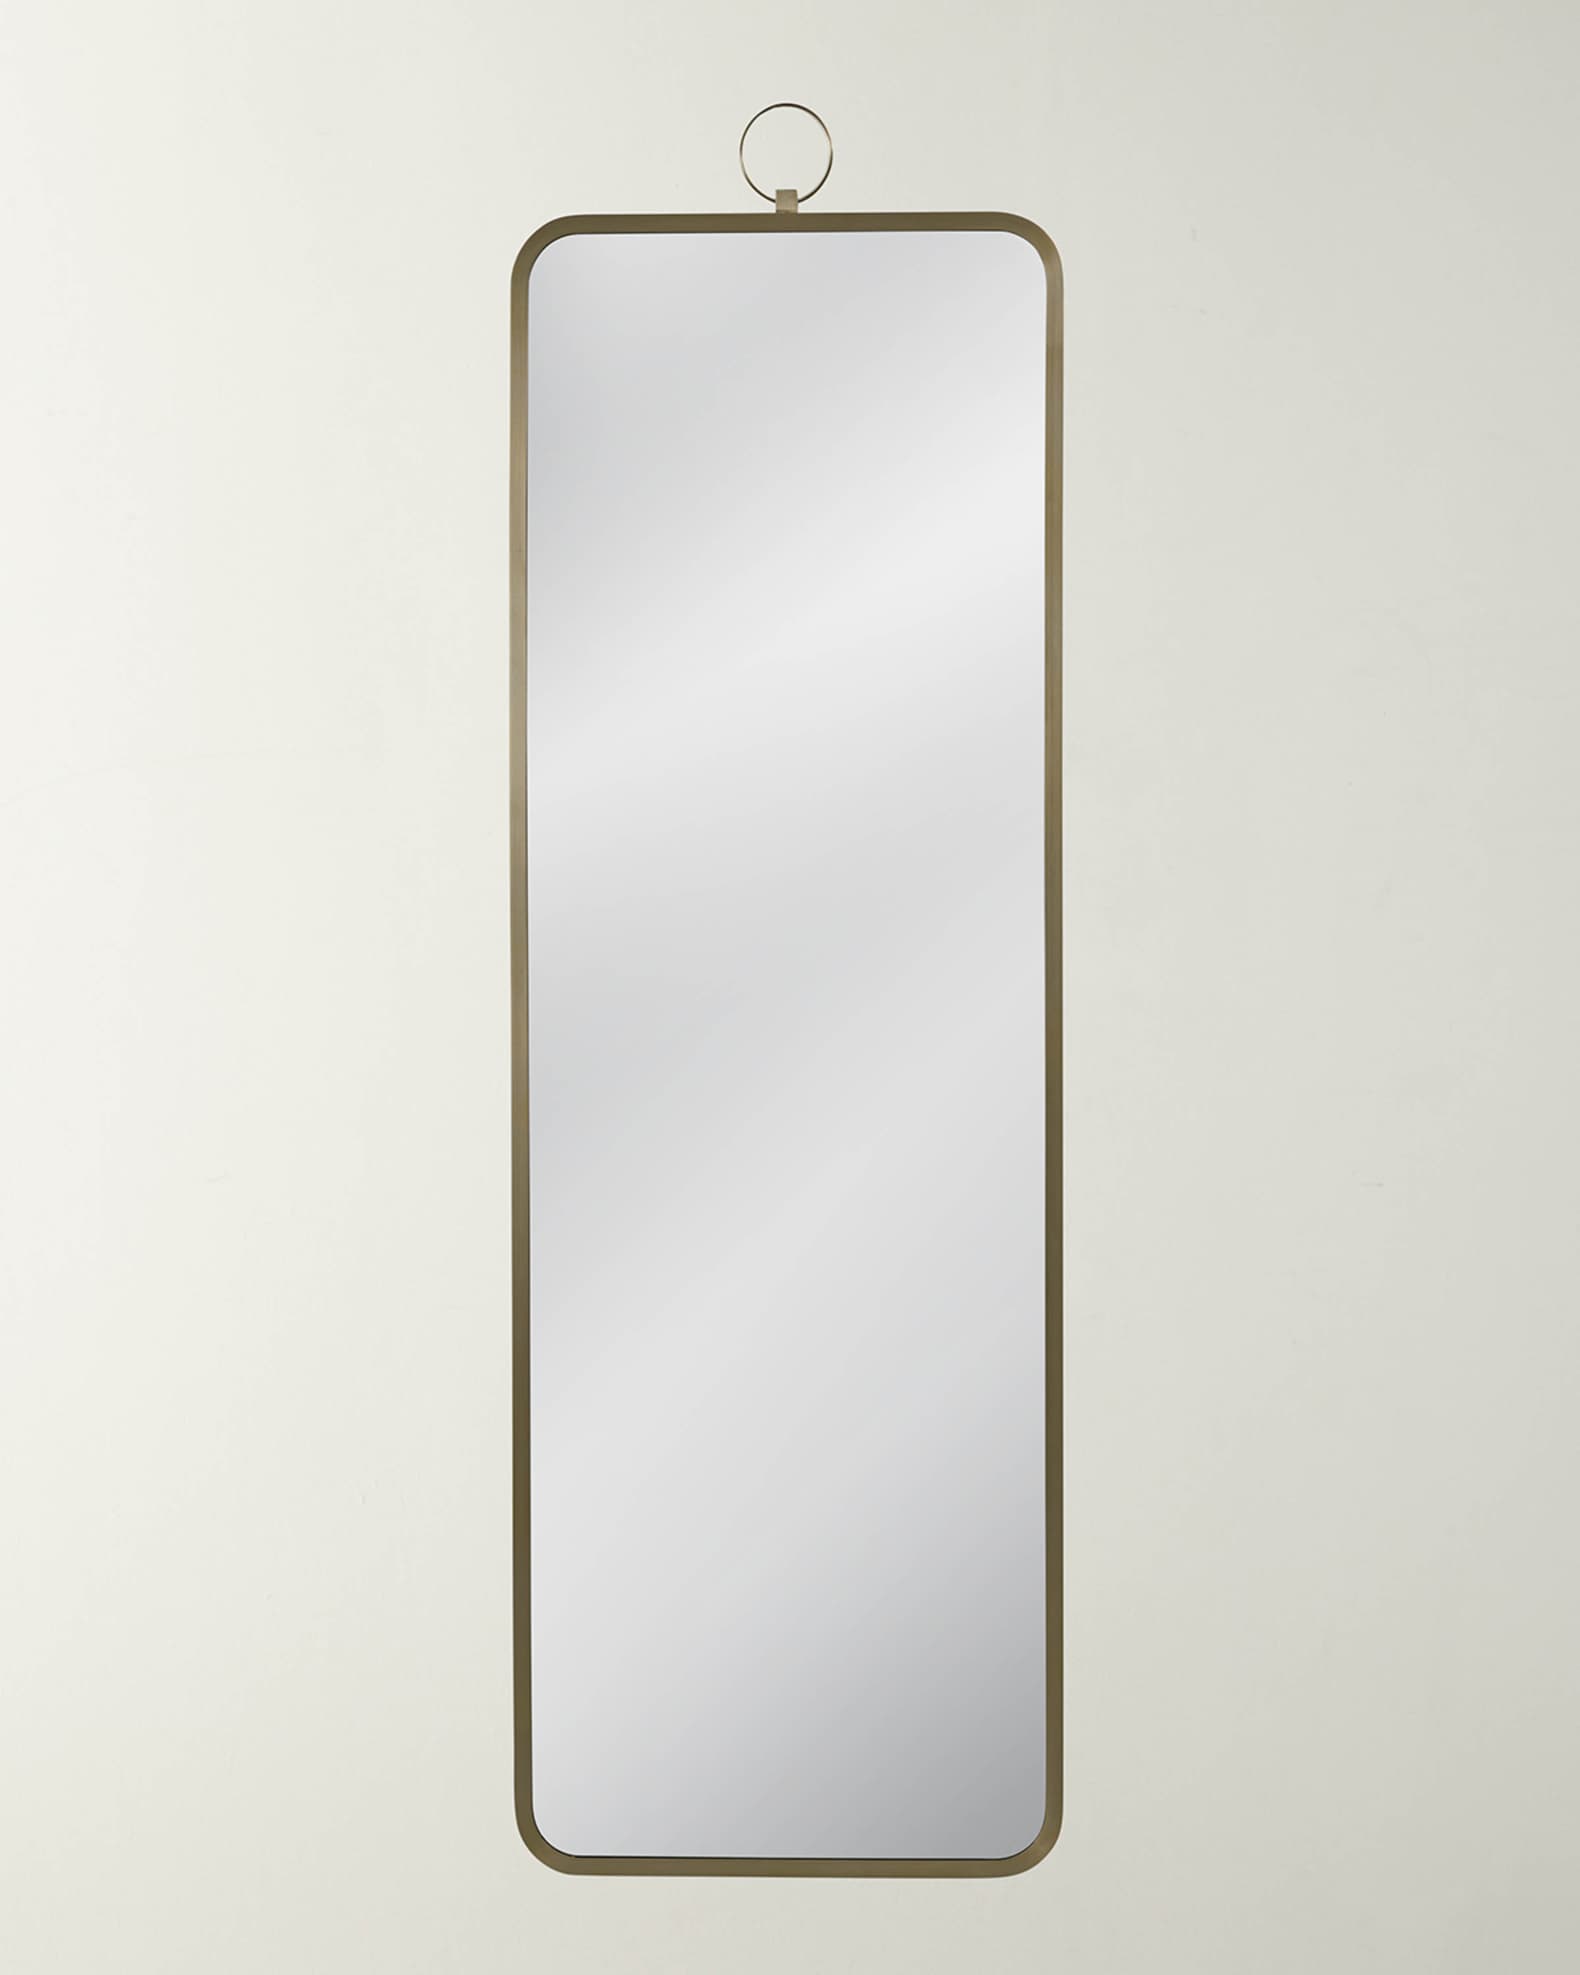 Raudel Floor Mirror, 80 x 20